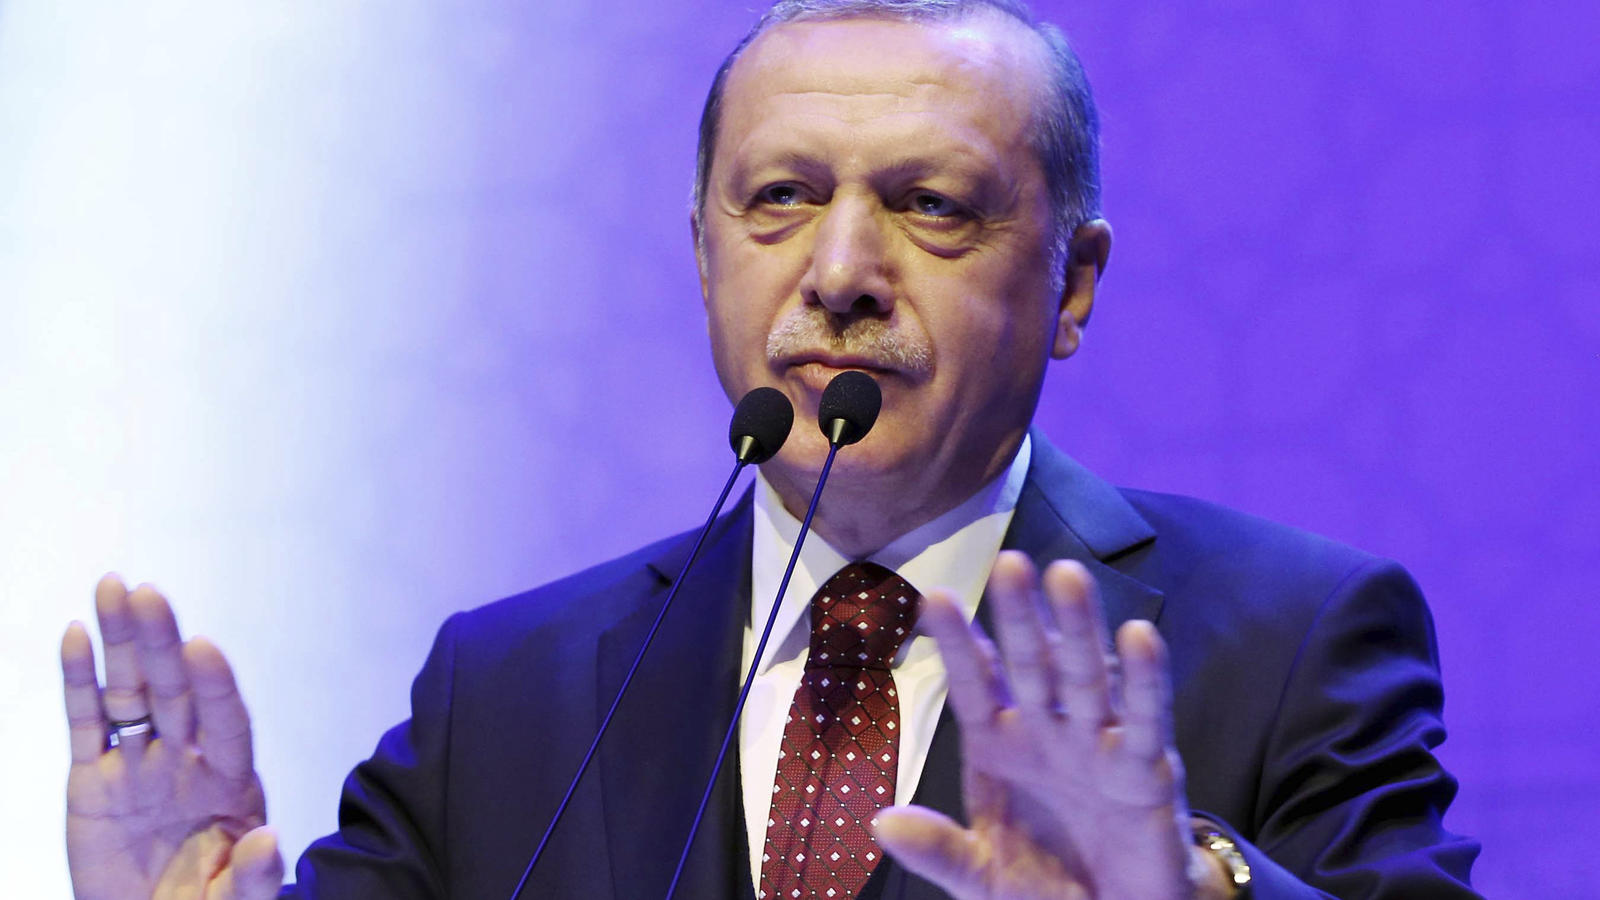 Der türkische Präsident Recep Tayyip Erdogan spricht am 19.03.2017 in Istanbul (Türkei) bei einer Veranstaltung seiner Unterstützer. Foto: Yasin Bulbul/Pool Presidential Press Service/AP/dpa +++(c) dpa - Bildfunk+++